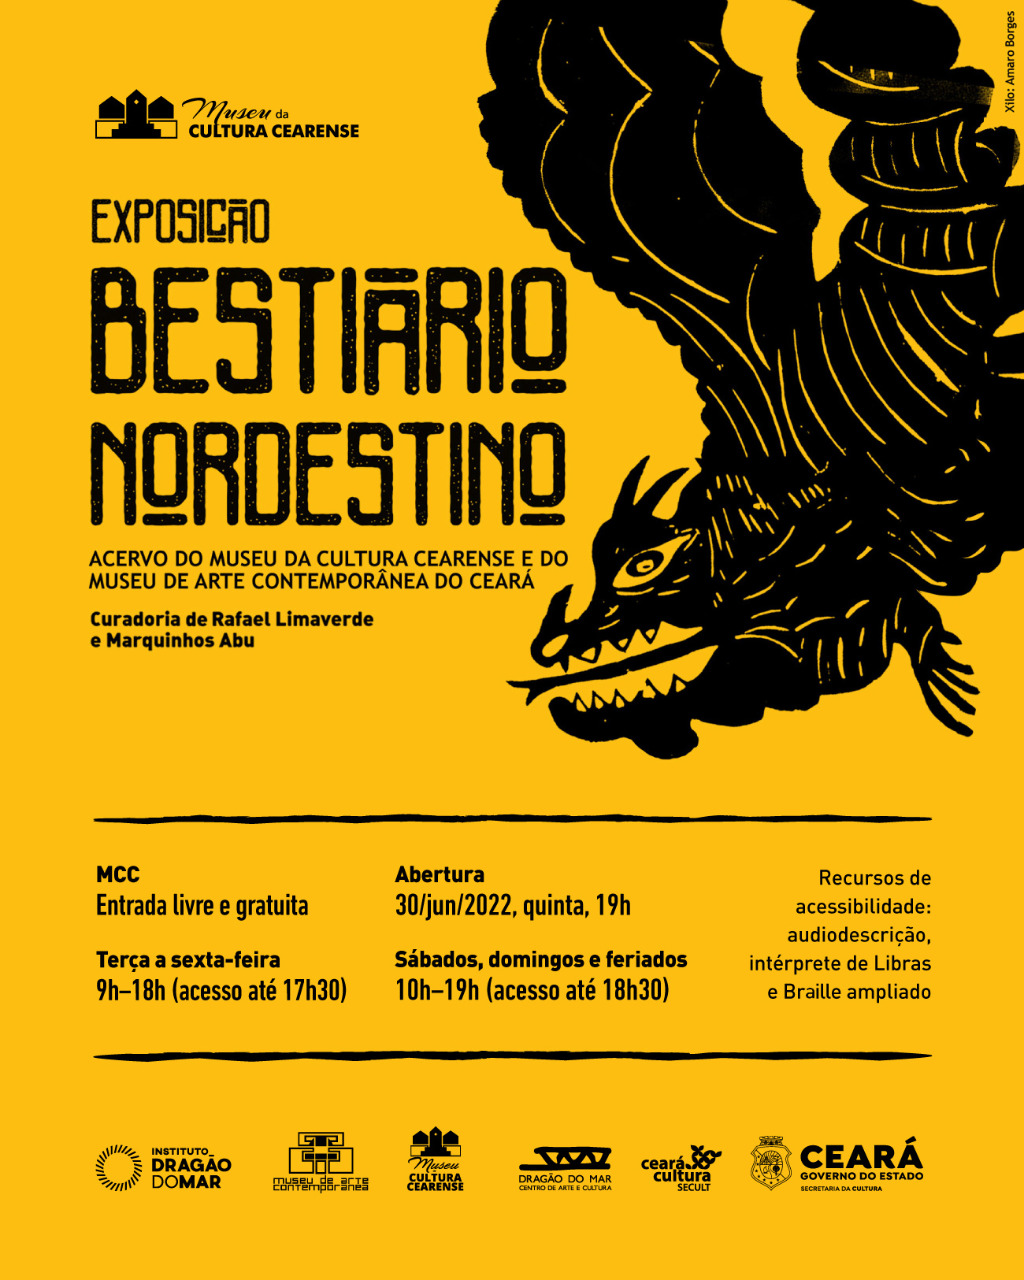 Museu da Cultura Cearense abre exposição Bestiário Nordestino na